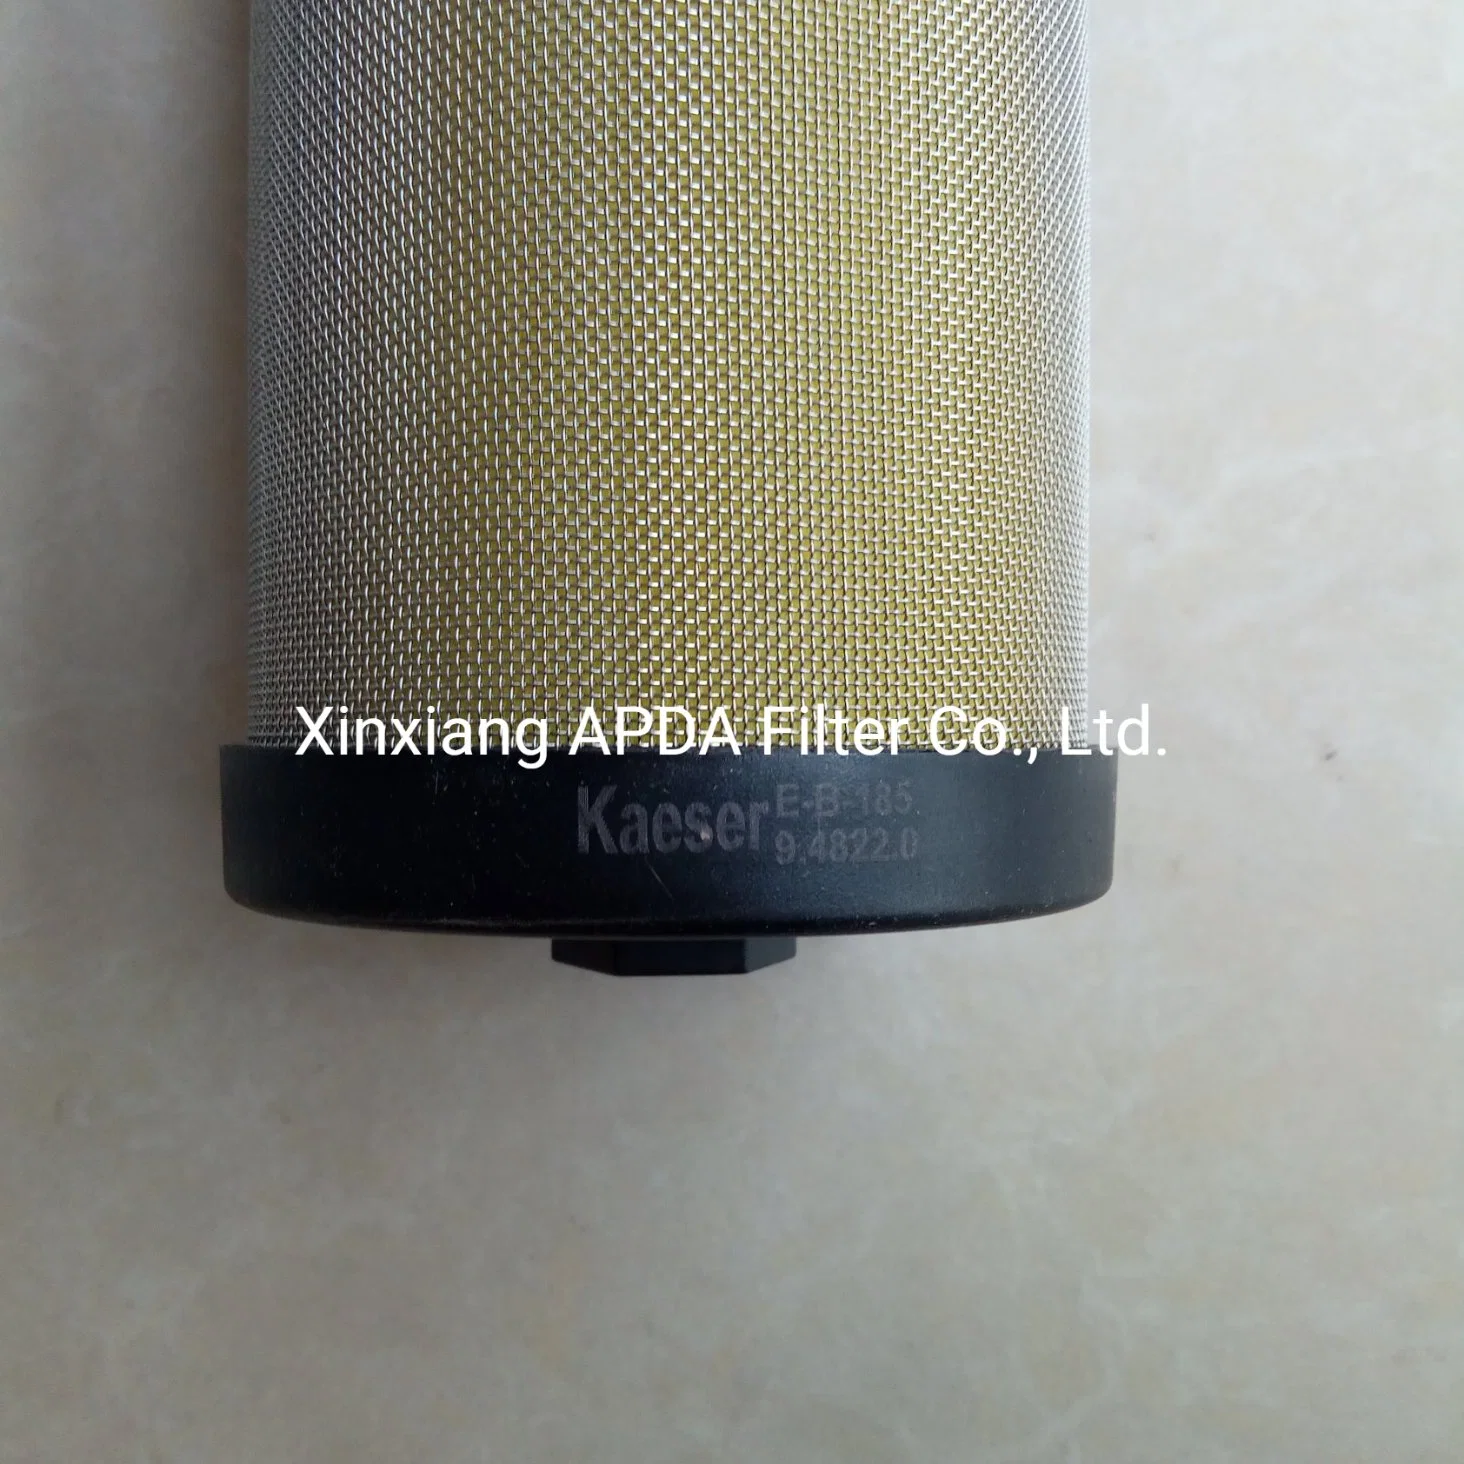 Elemento de filtro en línea de alta calidad E-B-185 9.4822.0 E-C-185 9.4834.0 E-D-185 9.4846.0